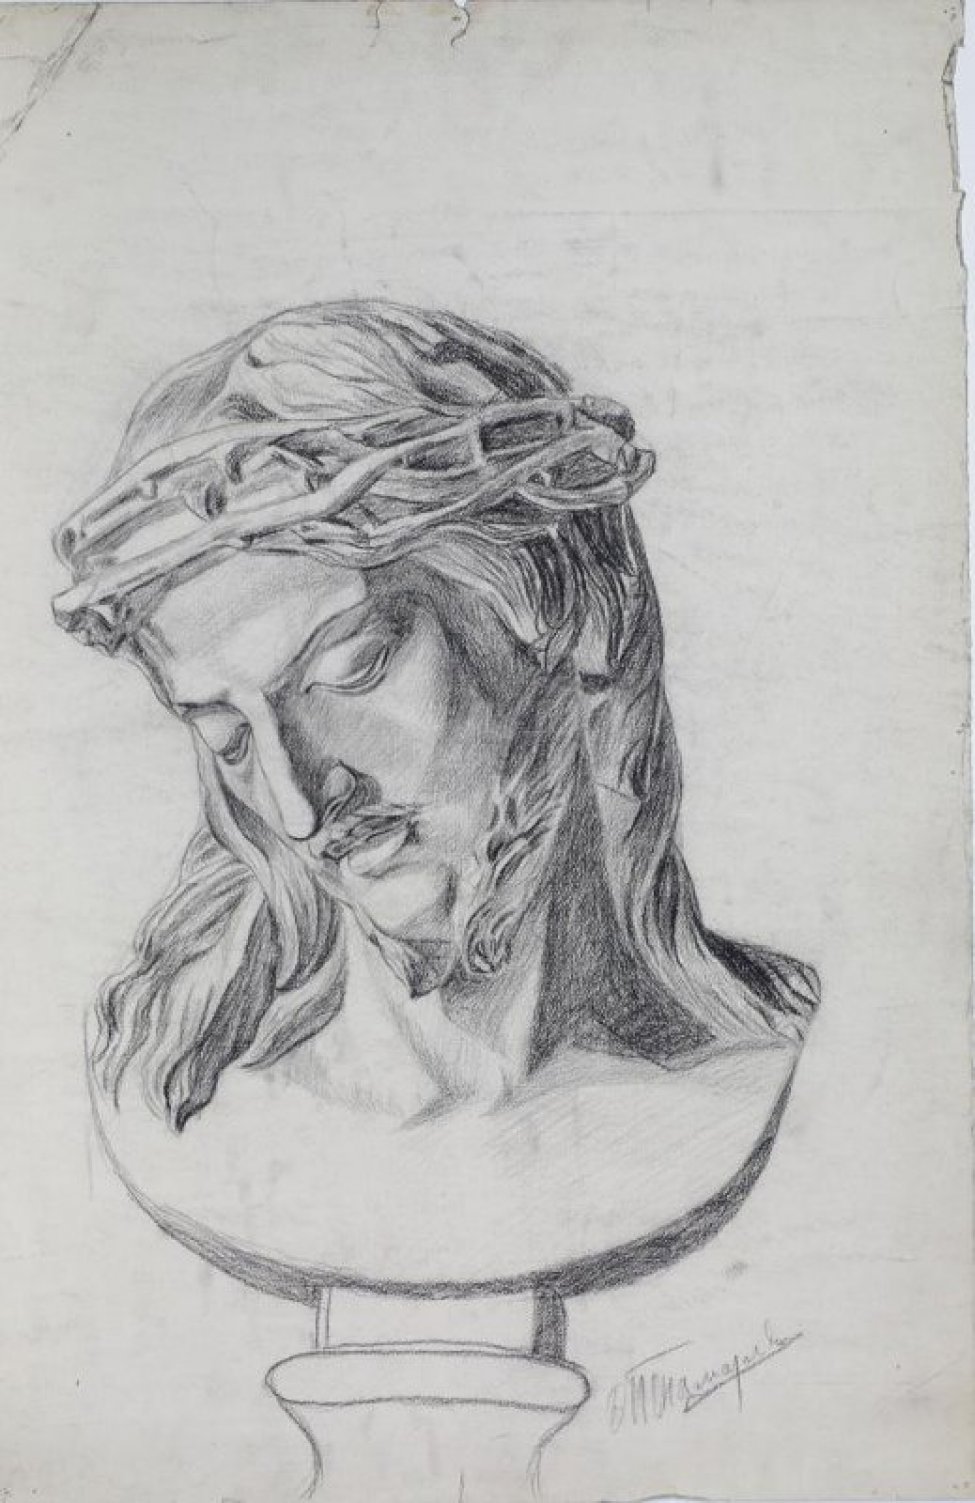 Изображен Христос в терном венке;  голова наклонена влево и вниз. Длинные волосы прядями спускаются на плечи. Глаза полузакрыты. Лицо обрамляет маленькая бородка.